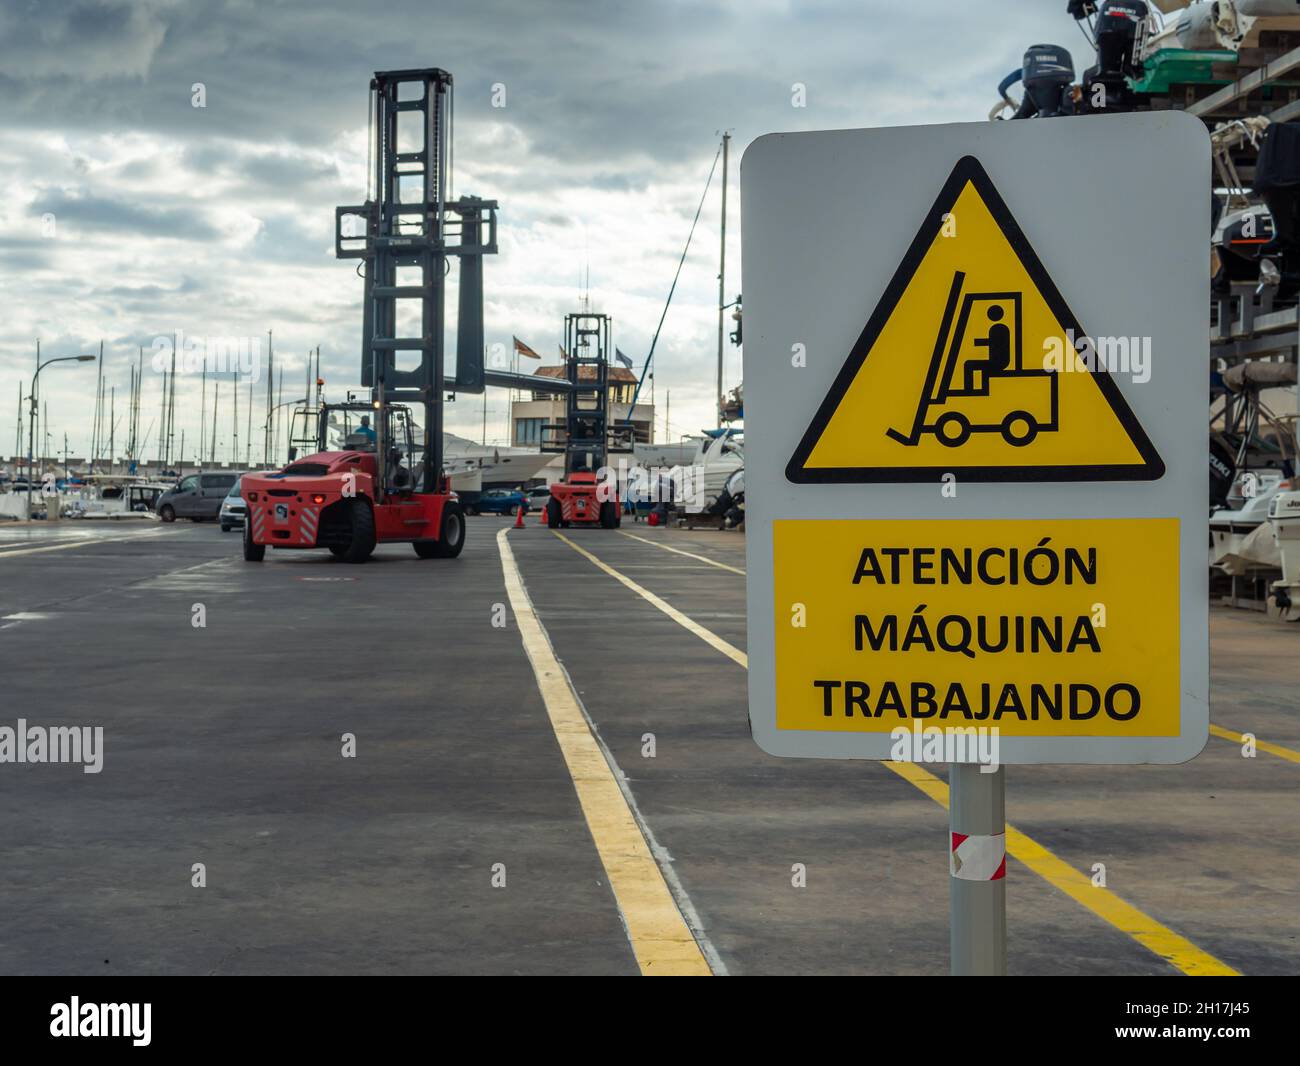 Gros plan d'une affiche de, danger machine working écrit en espagnol.En arrière-plan, hors foyer, un bateau transportant une machine plaçant des bateaux sur un moi Banque D'Images